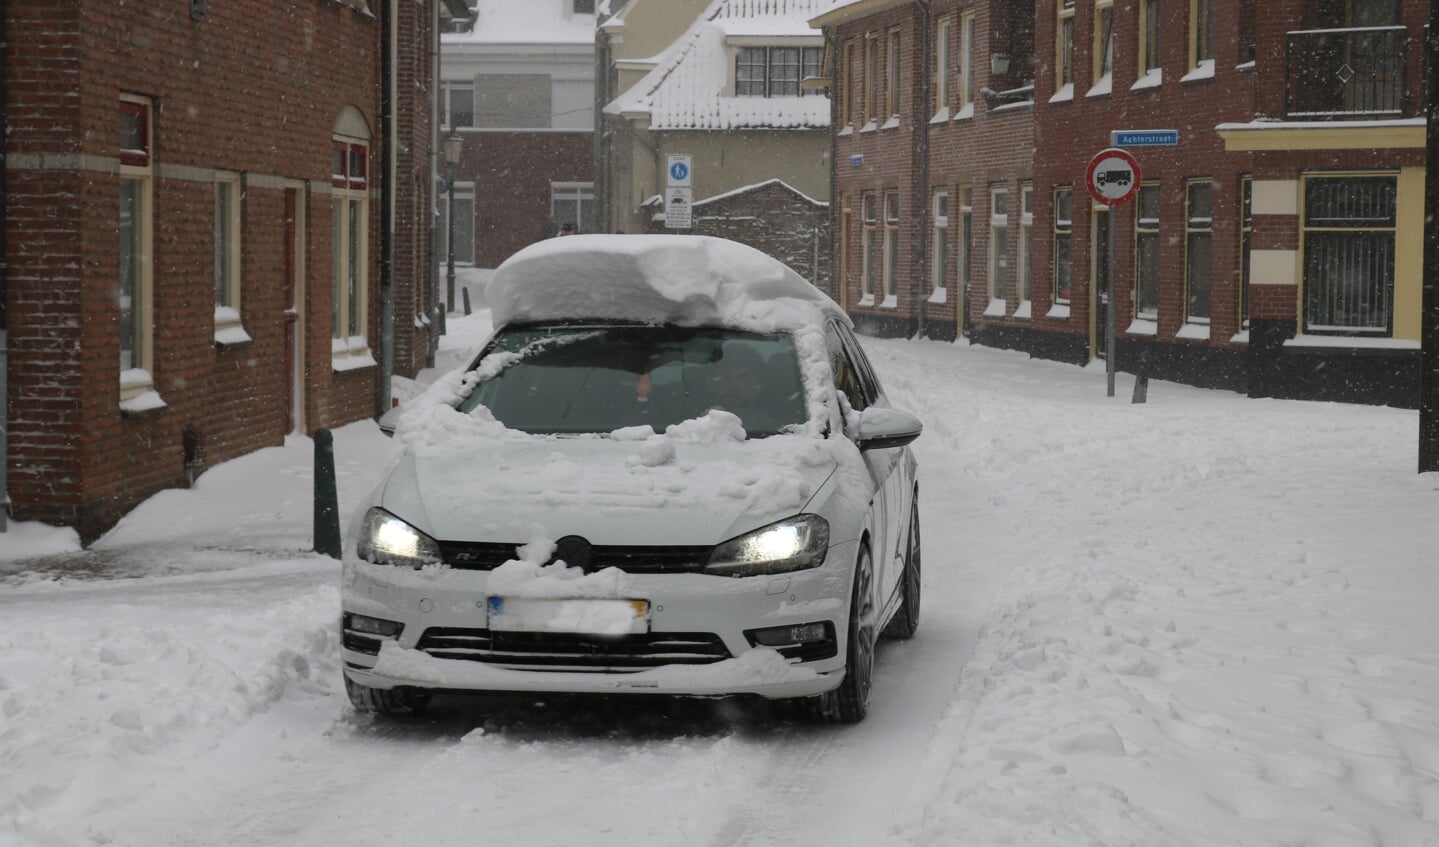 Het dak van de auto maakt duidelijk hoeveel sneeuw er is gevallen. Foto: Arjen Dieperink